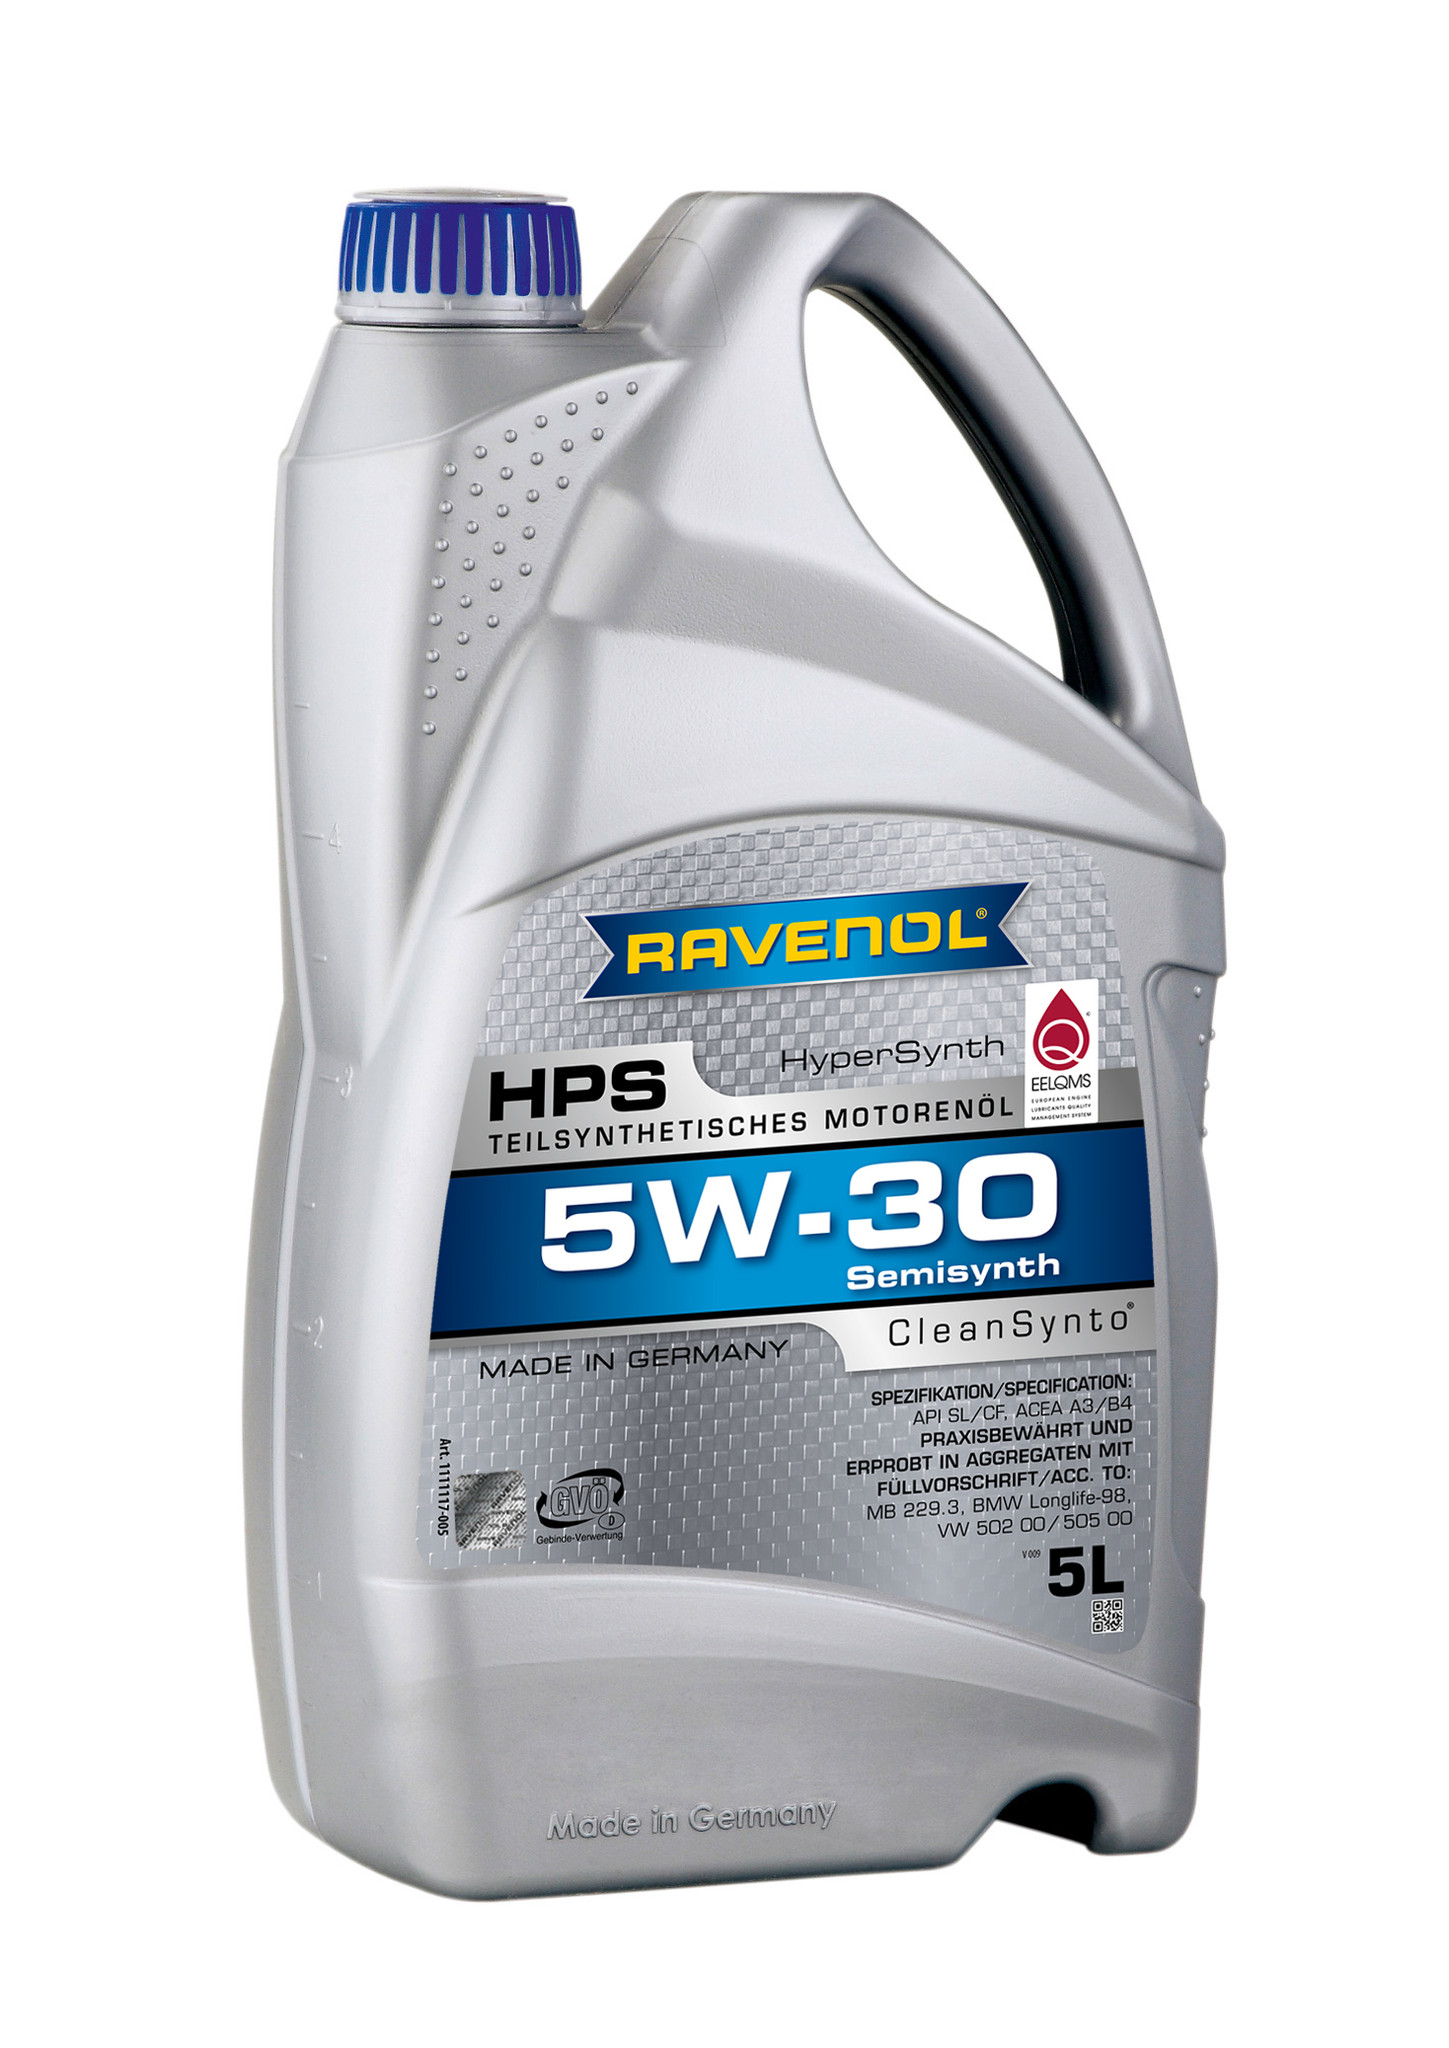 5W-30 Motor Oil - RAVENOL HPS Hypersynth